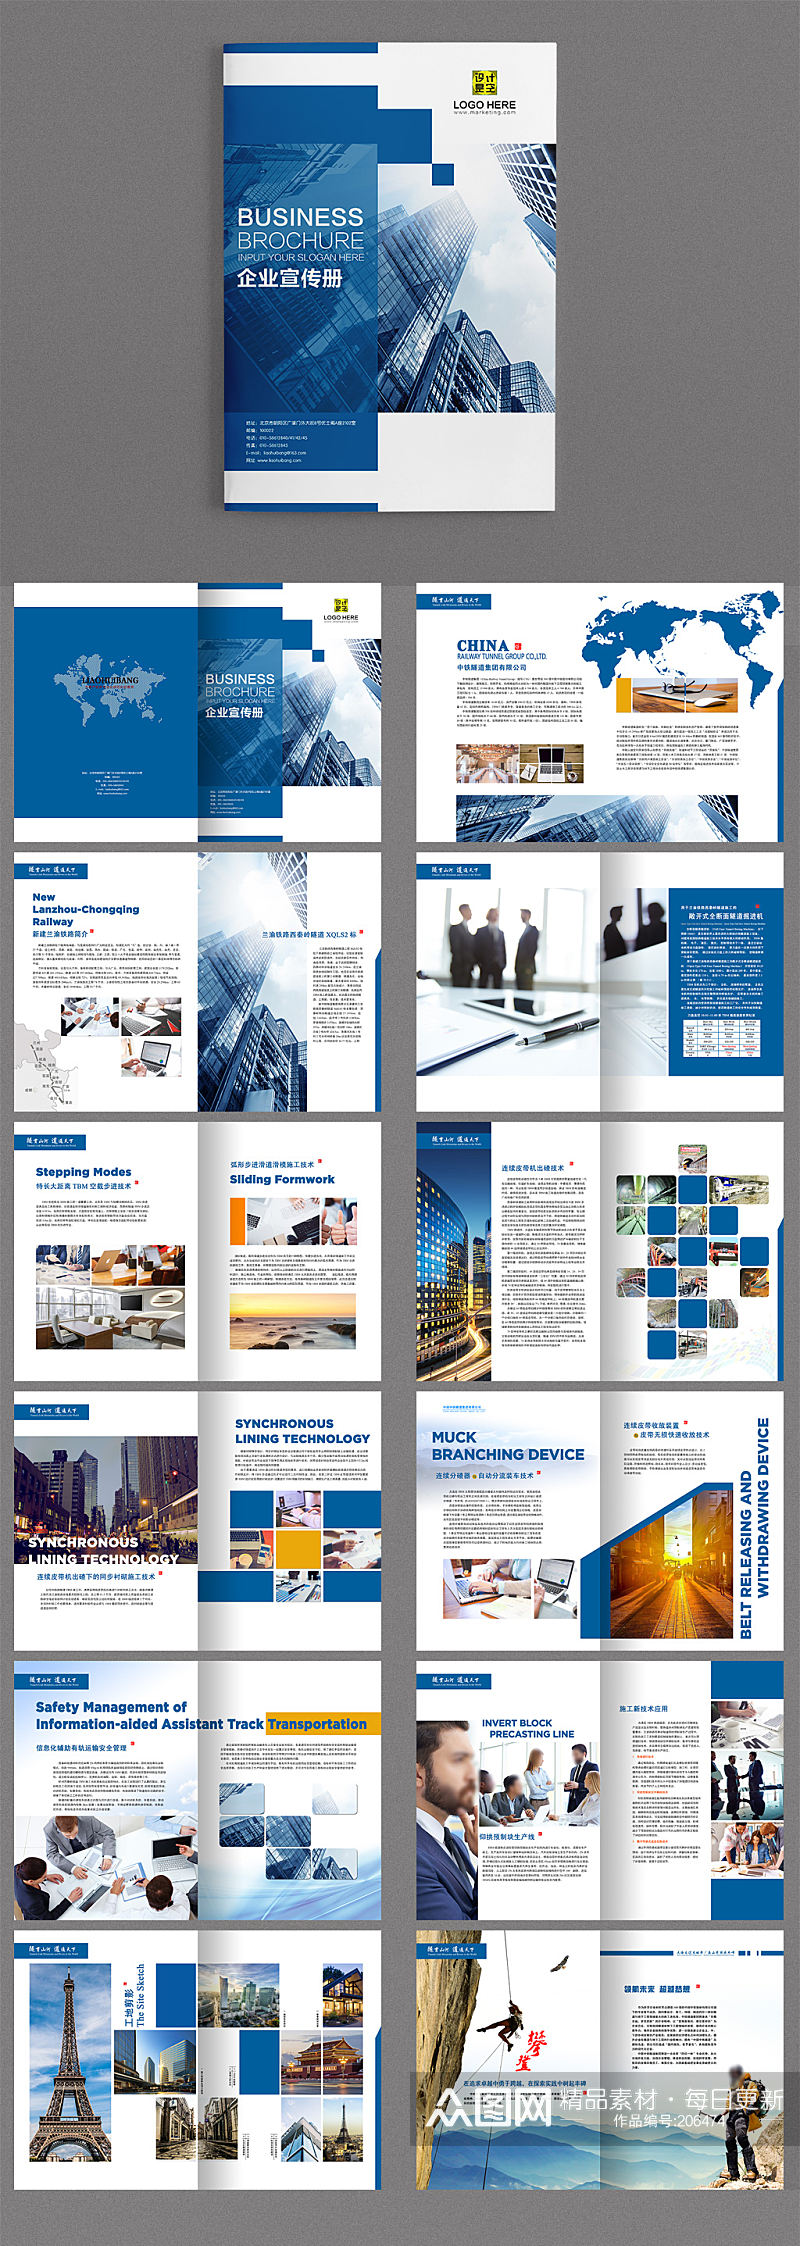 蓝色企业高端画册模板设计素材